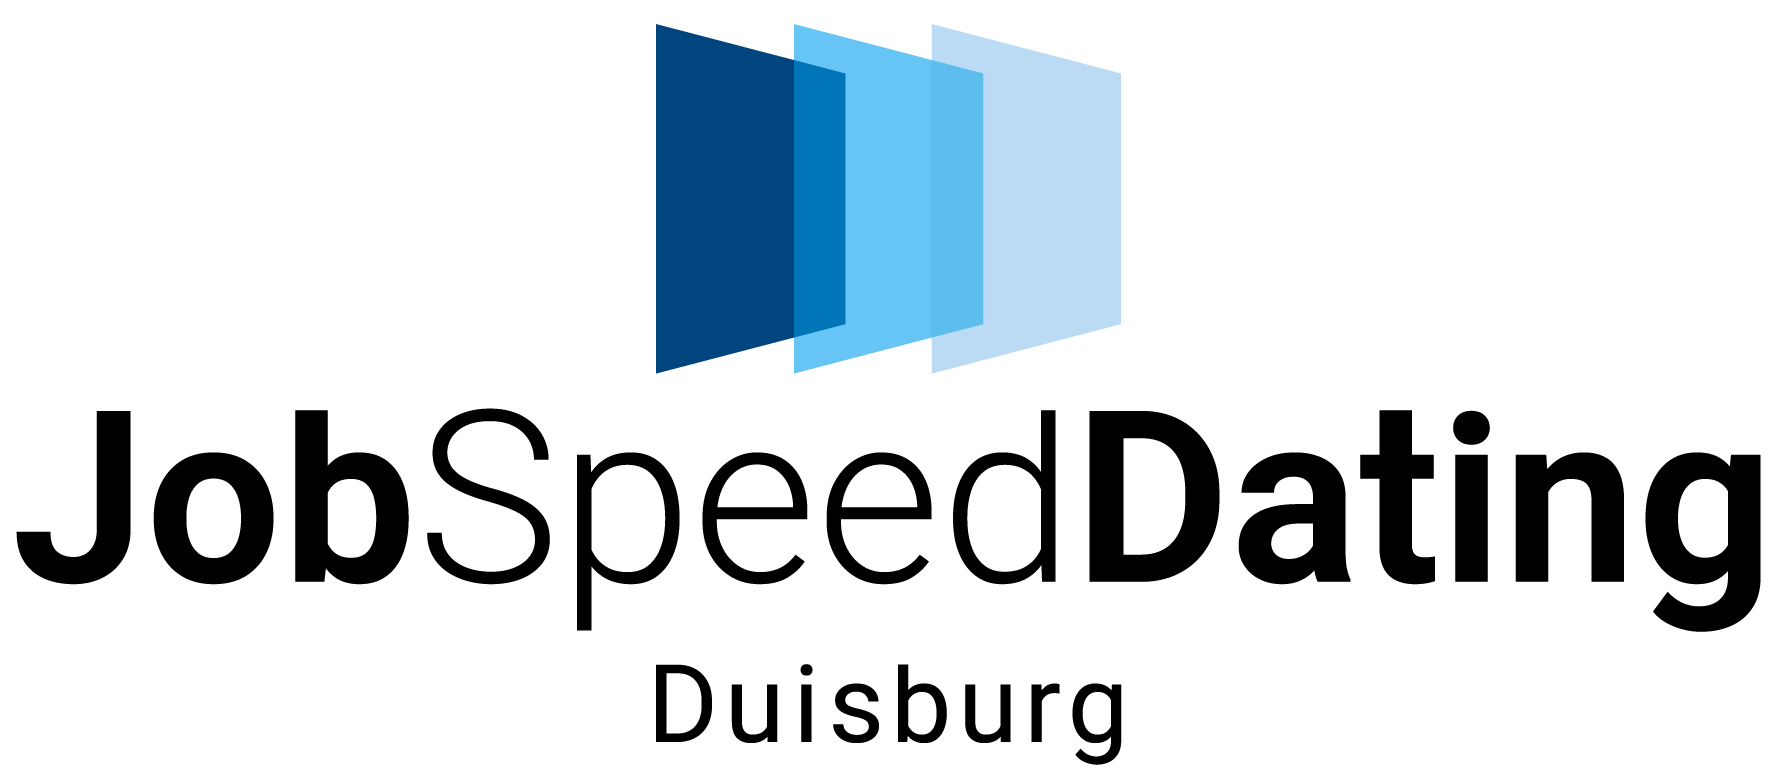 jsd-duisburg-logo-final2807-rgb.jpg